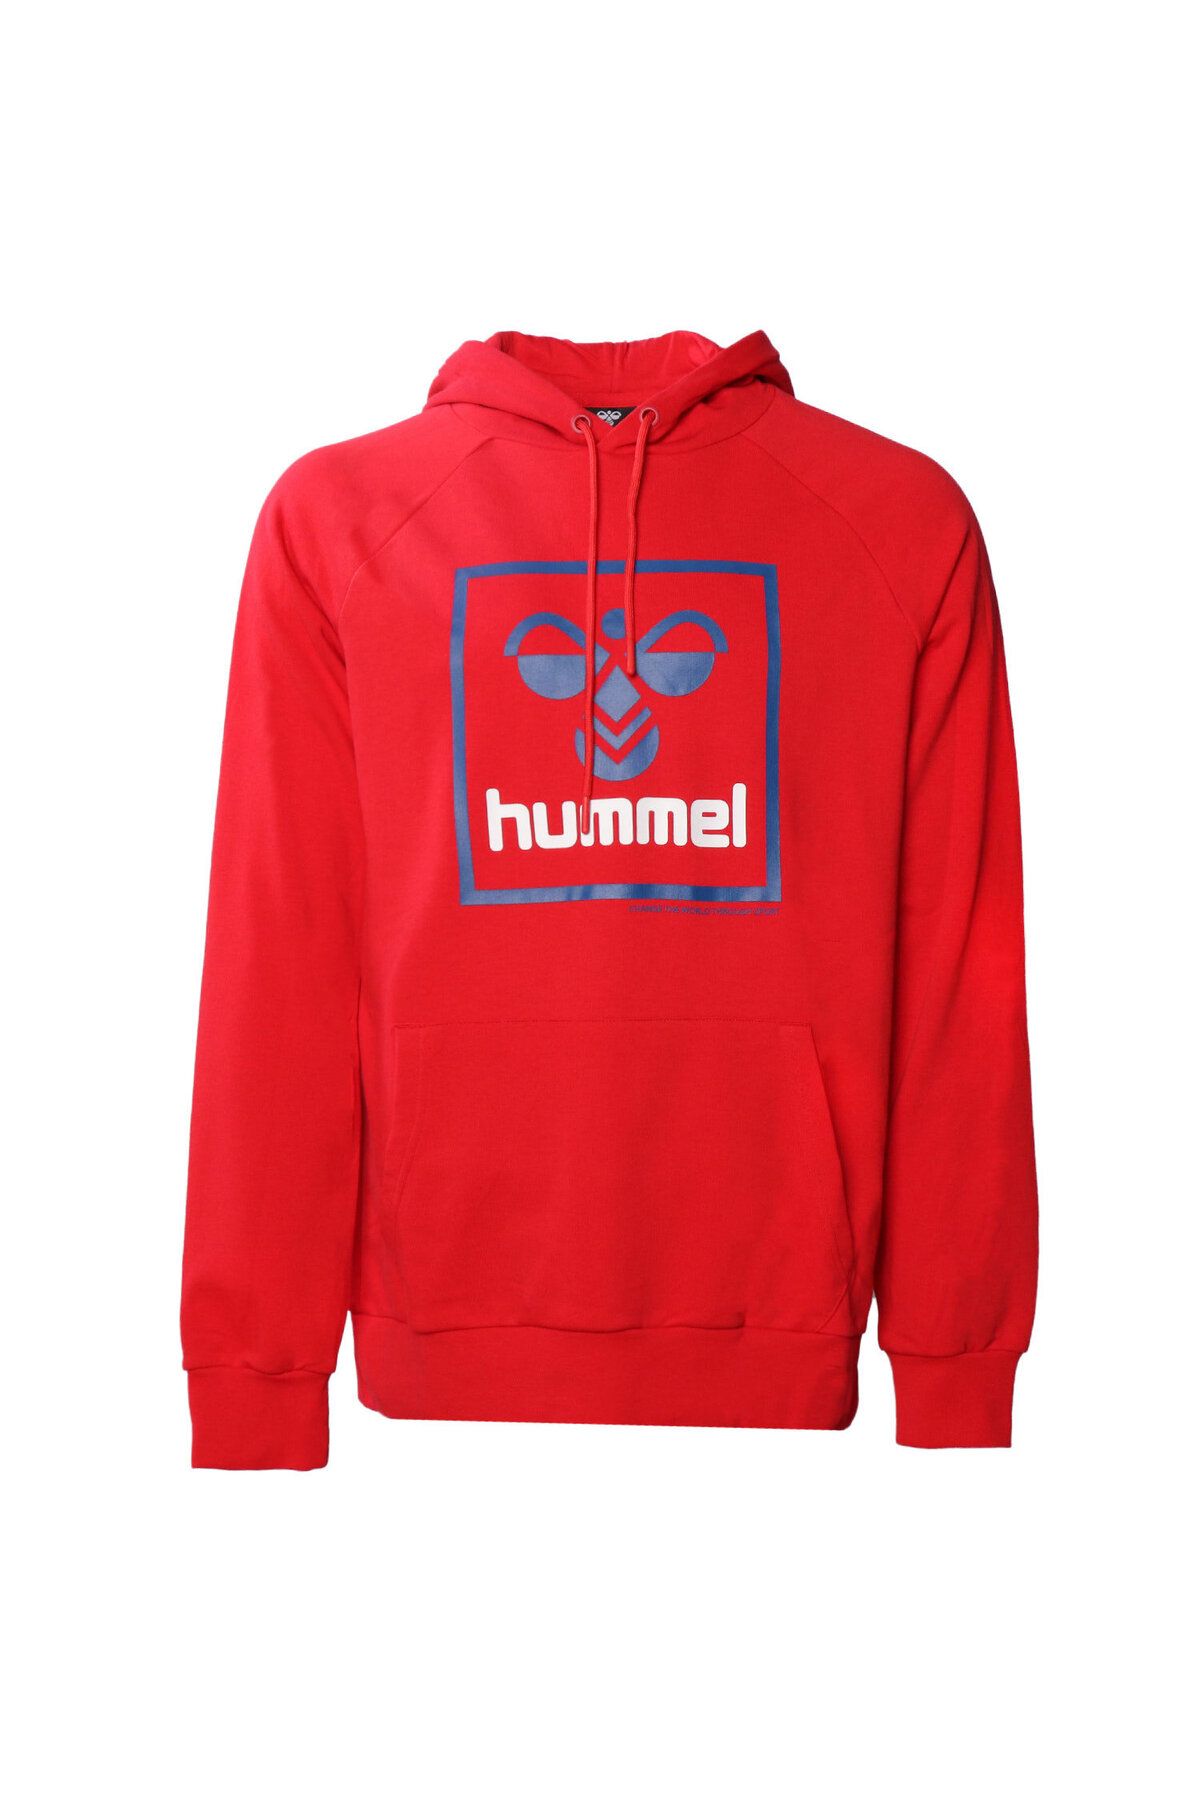 hummel t-isam 2.0 hoodie